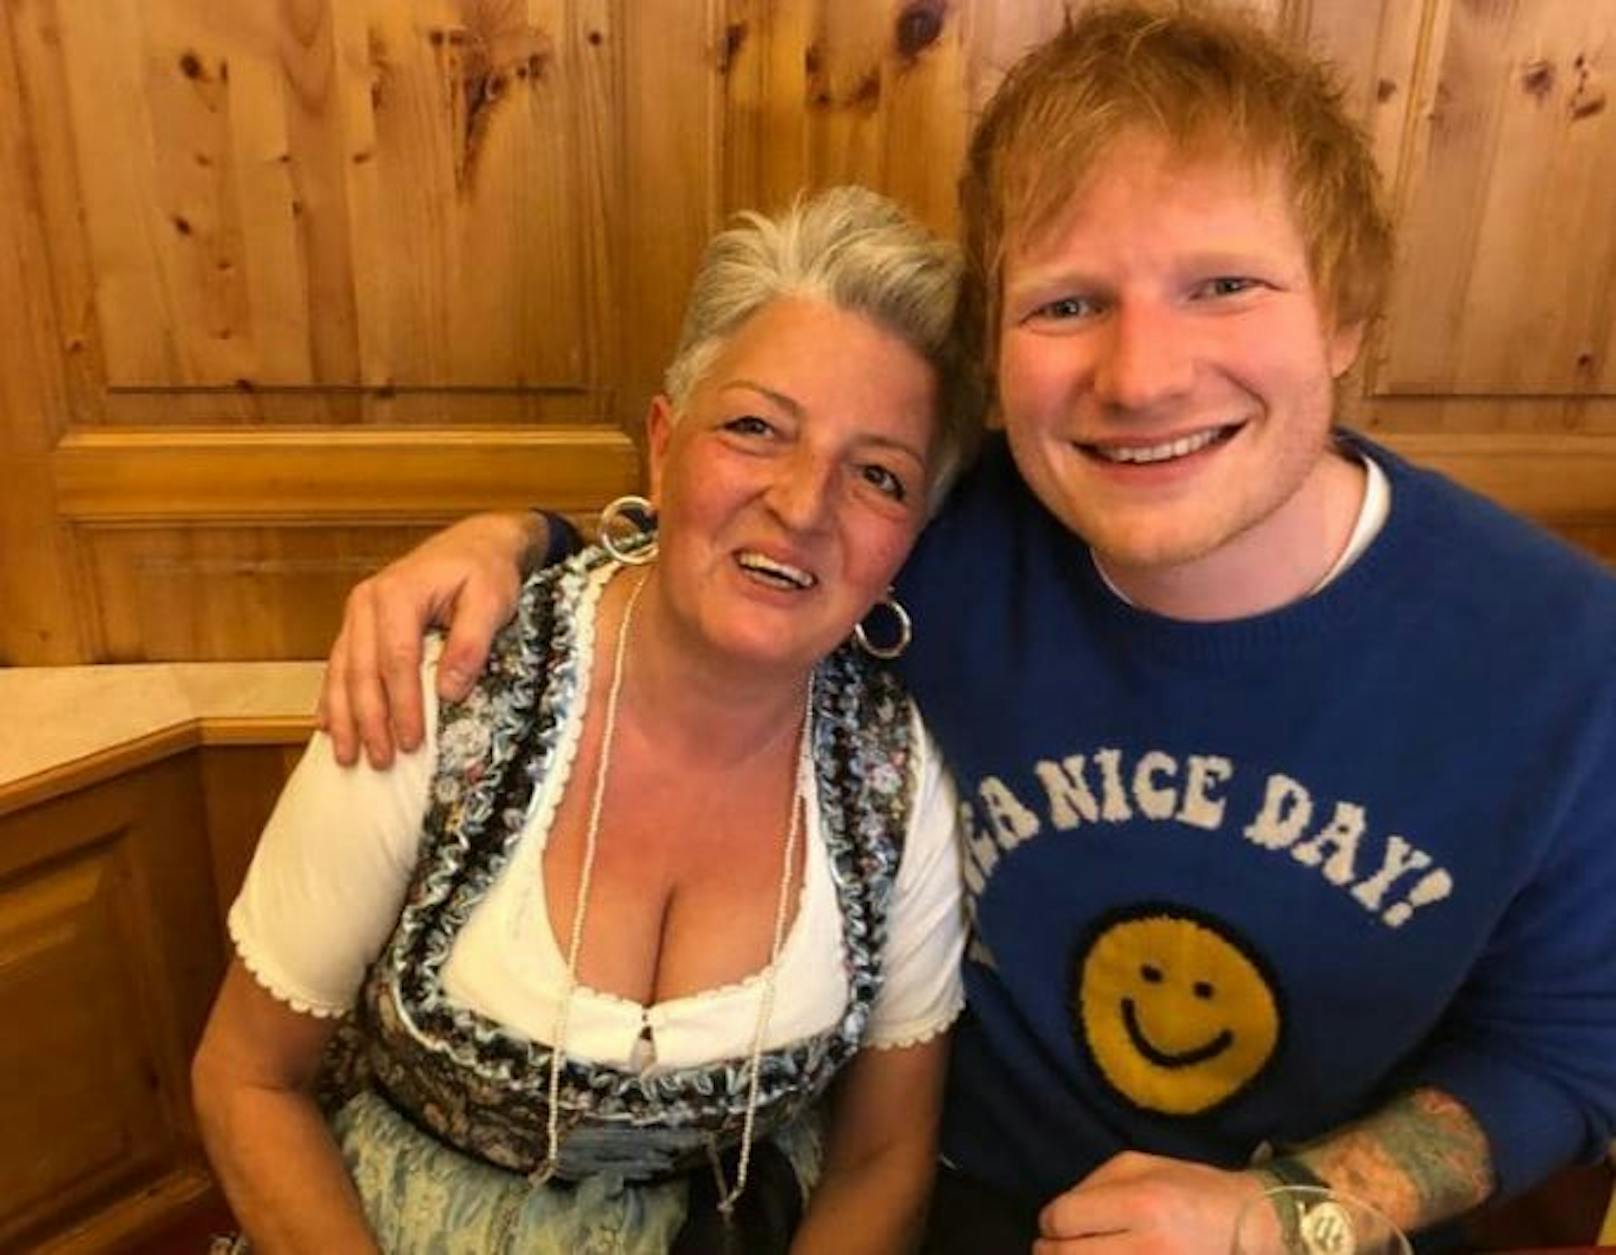 Ed Sheeran blödelt mit Kellnerin in Wiener Lokal